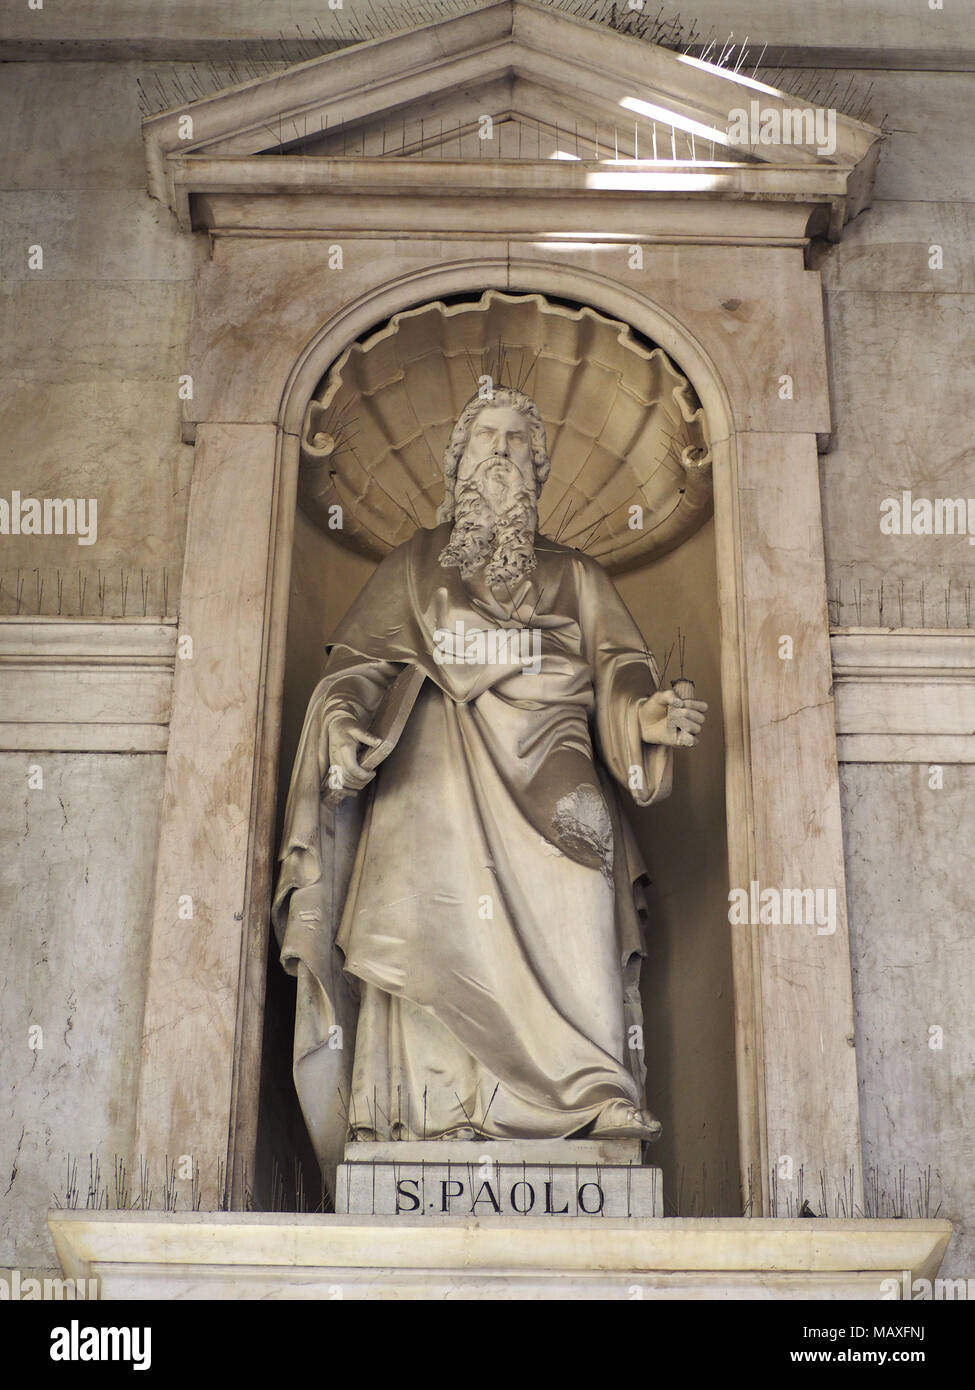 TURIN, ITALIE - CIRCA JANVIER 2018 : statue de Saint Paul (San Paolo en italien) à l'extérieur de l'église Santissima Annunziata Banque D'Images